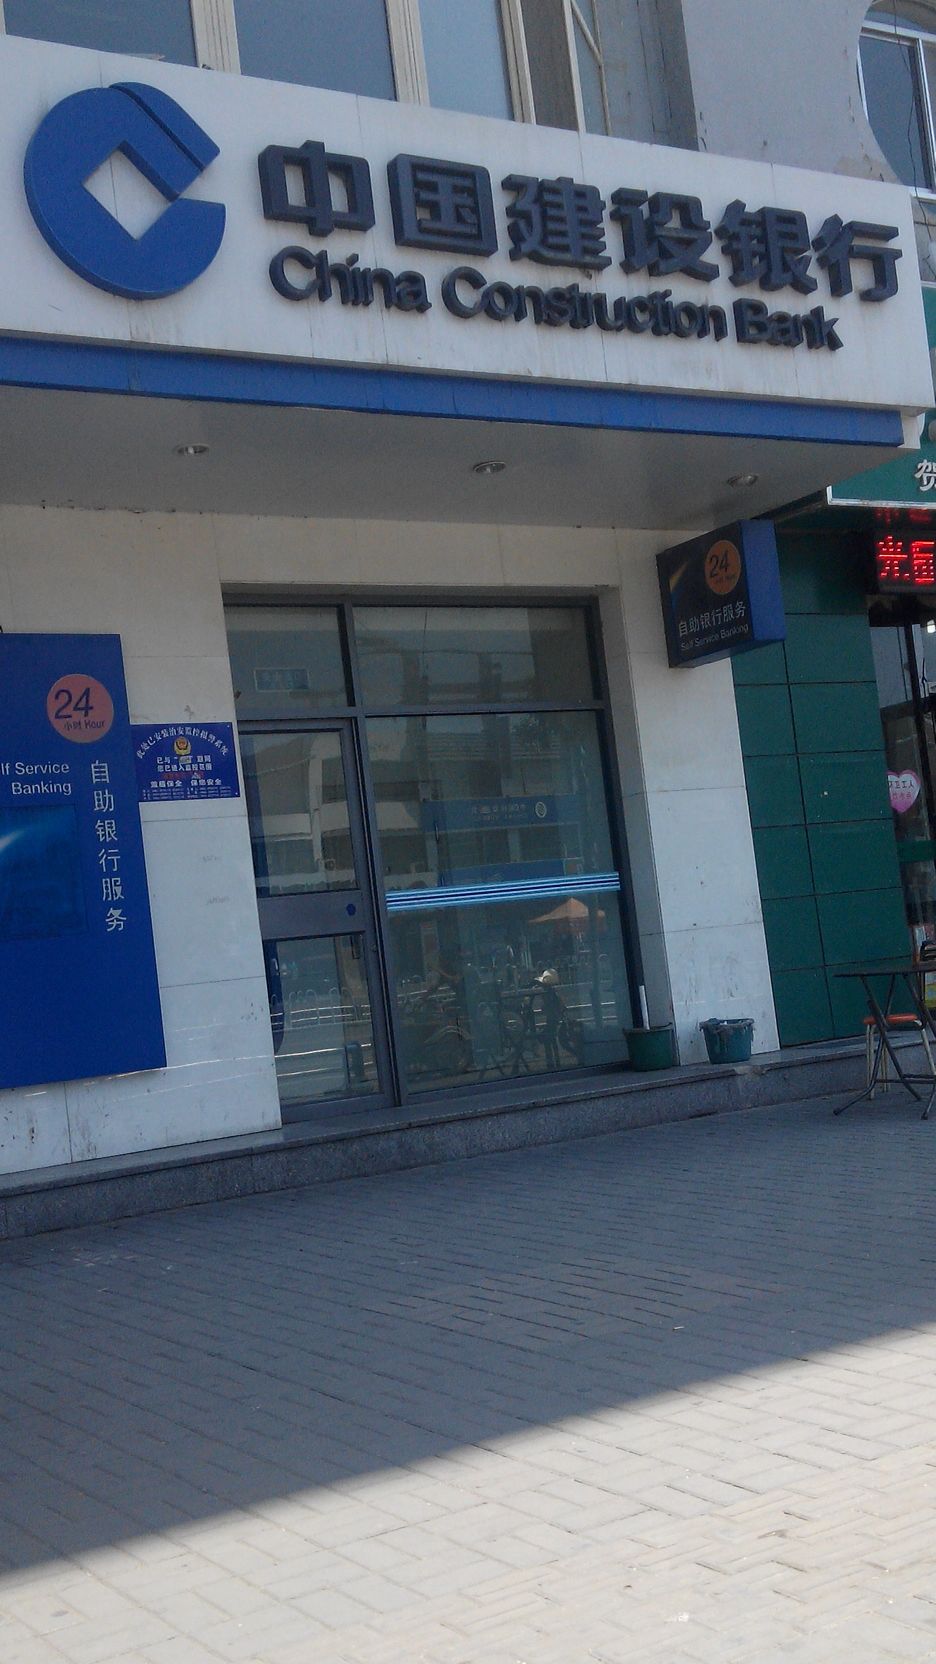 中国建设银行24小时自助银行(银川文萃支行)